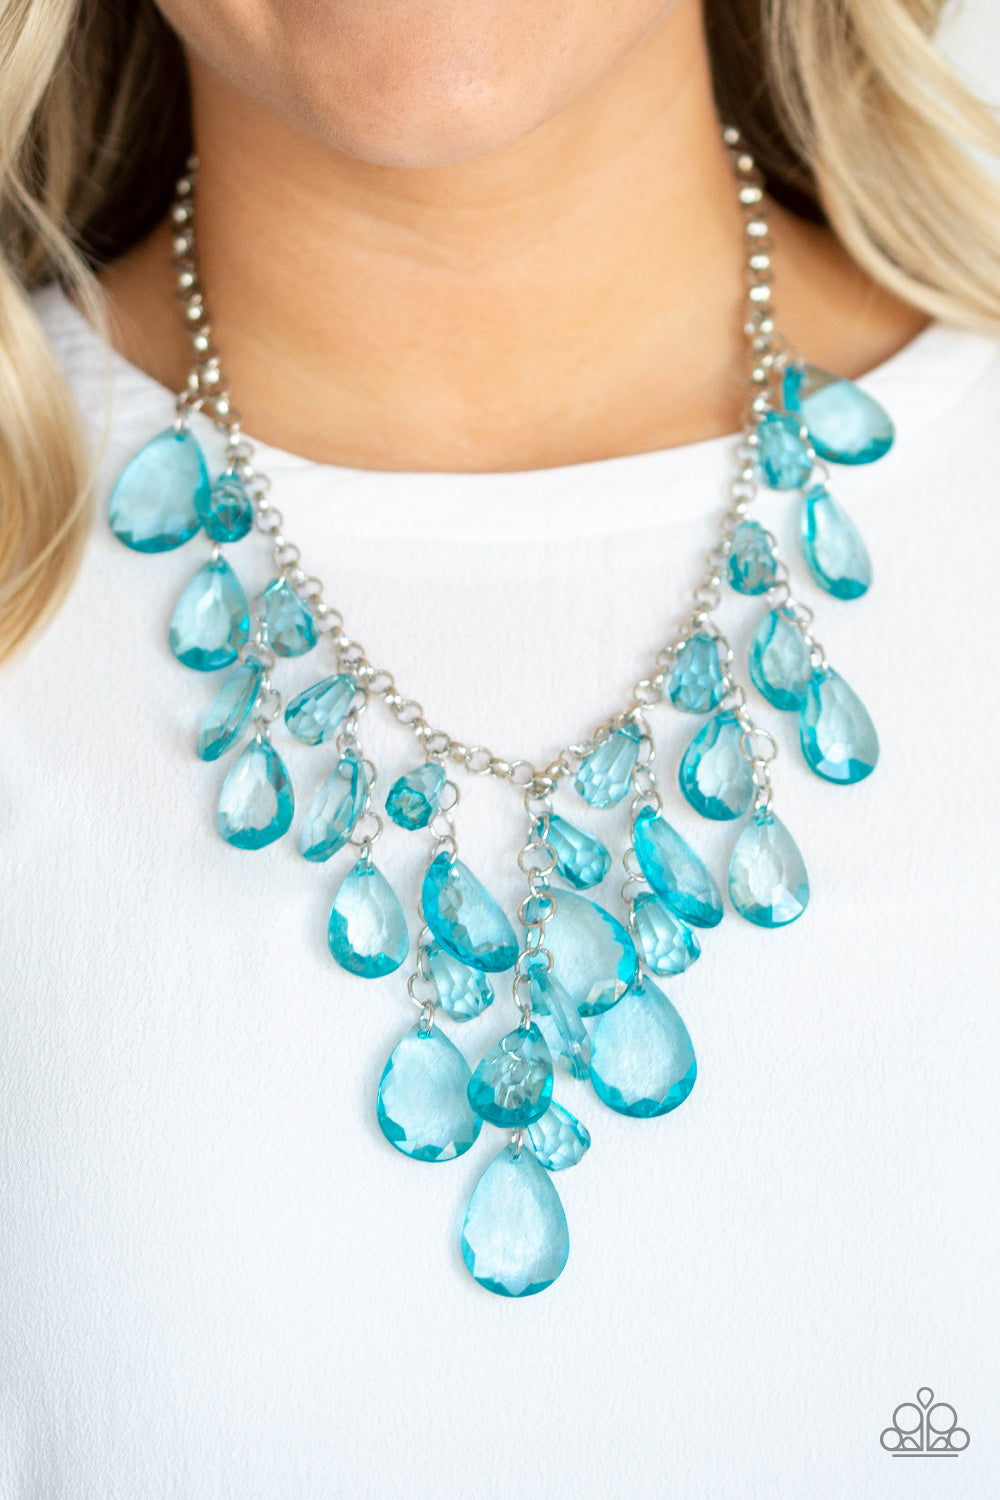 Irresistible Iridescence - Blue necklace Paparazzi